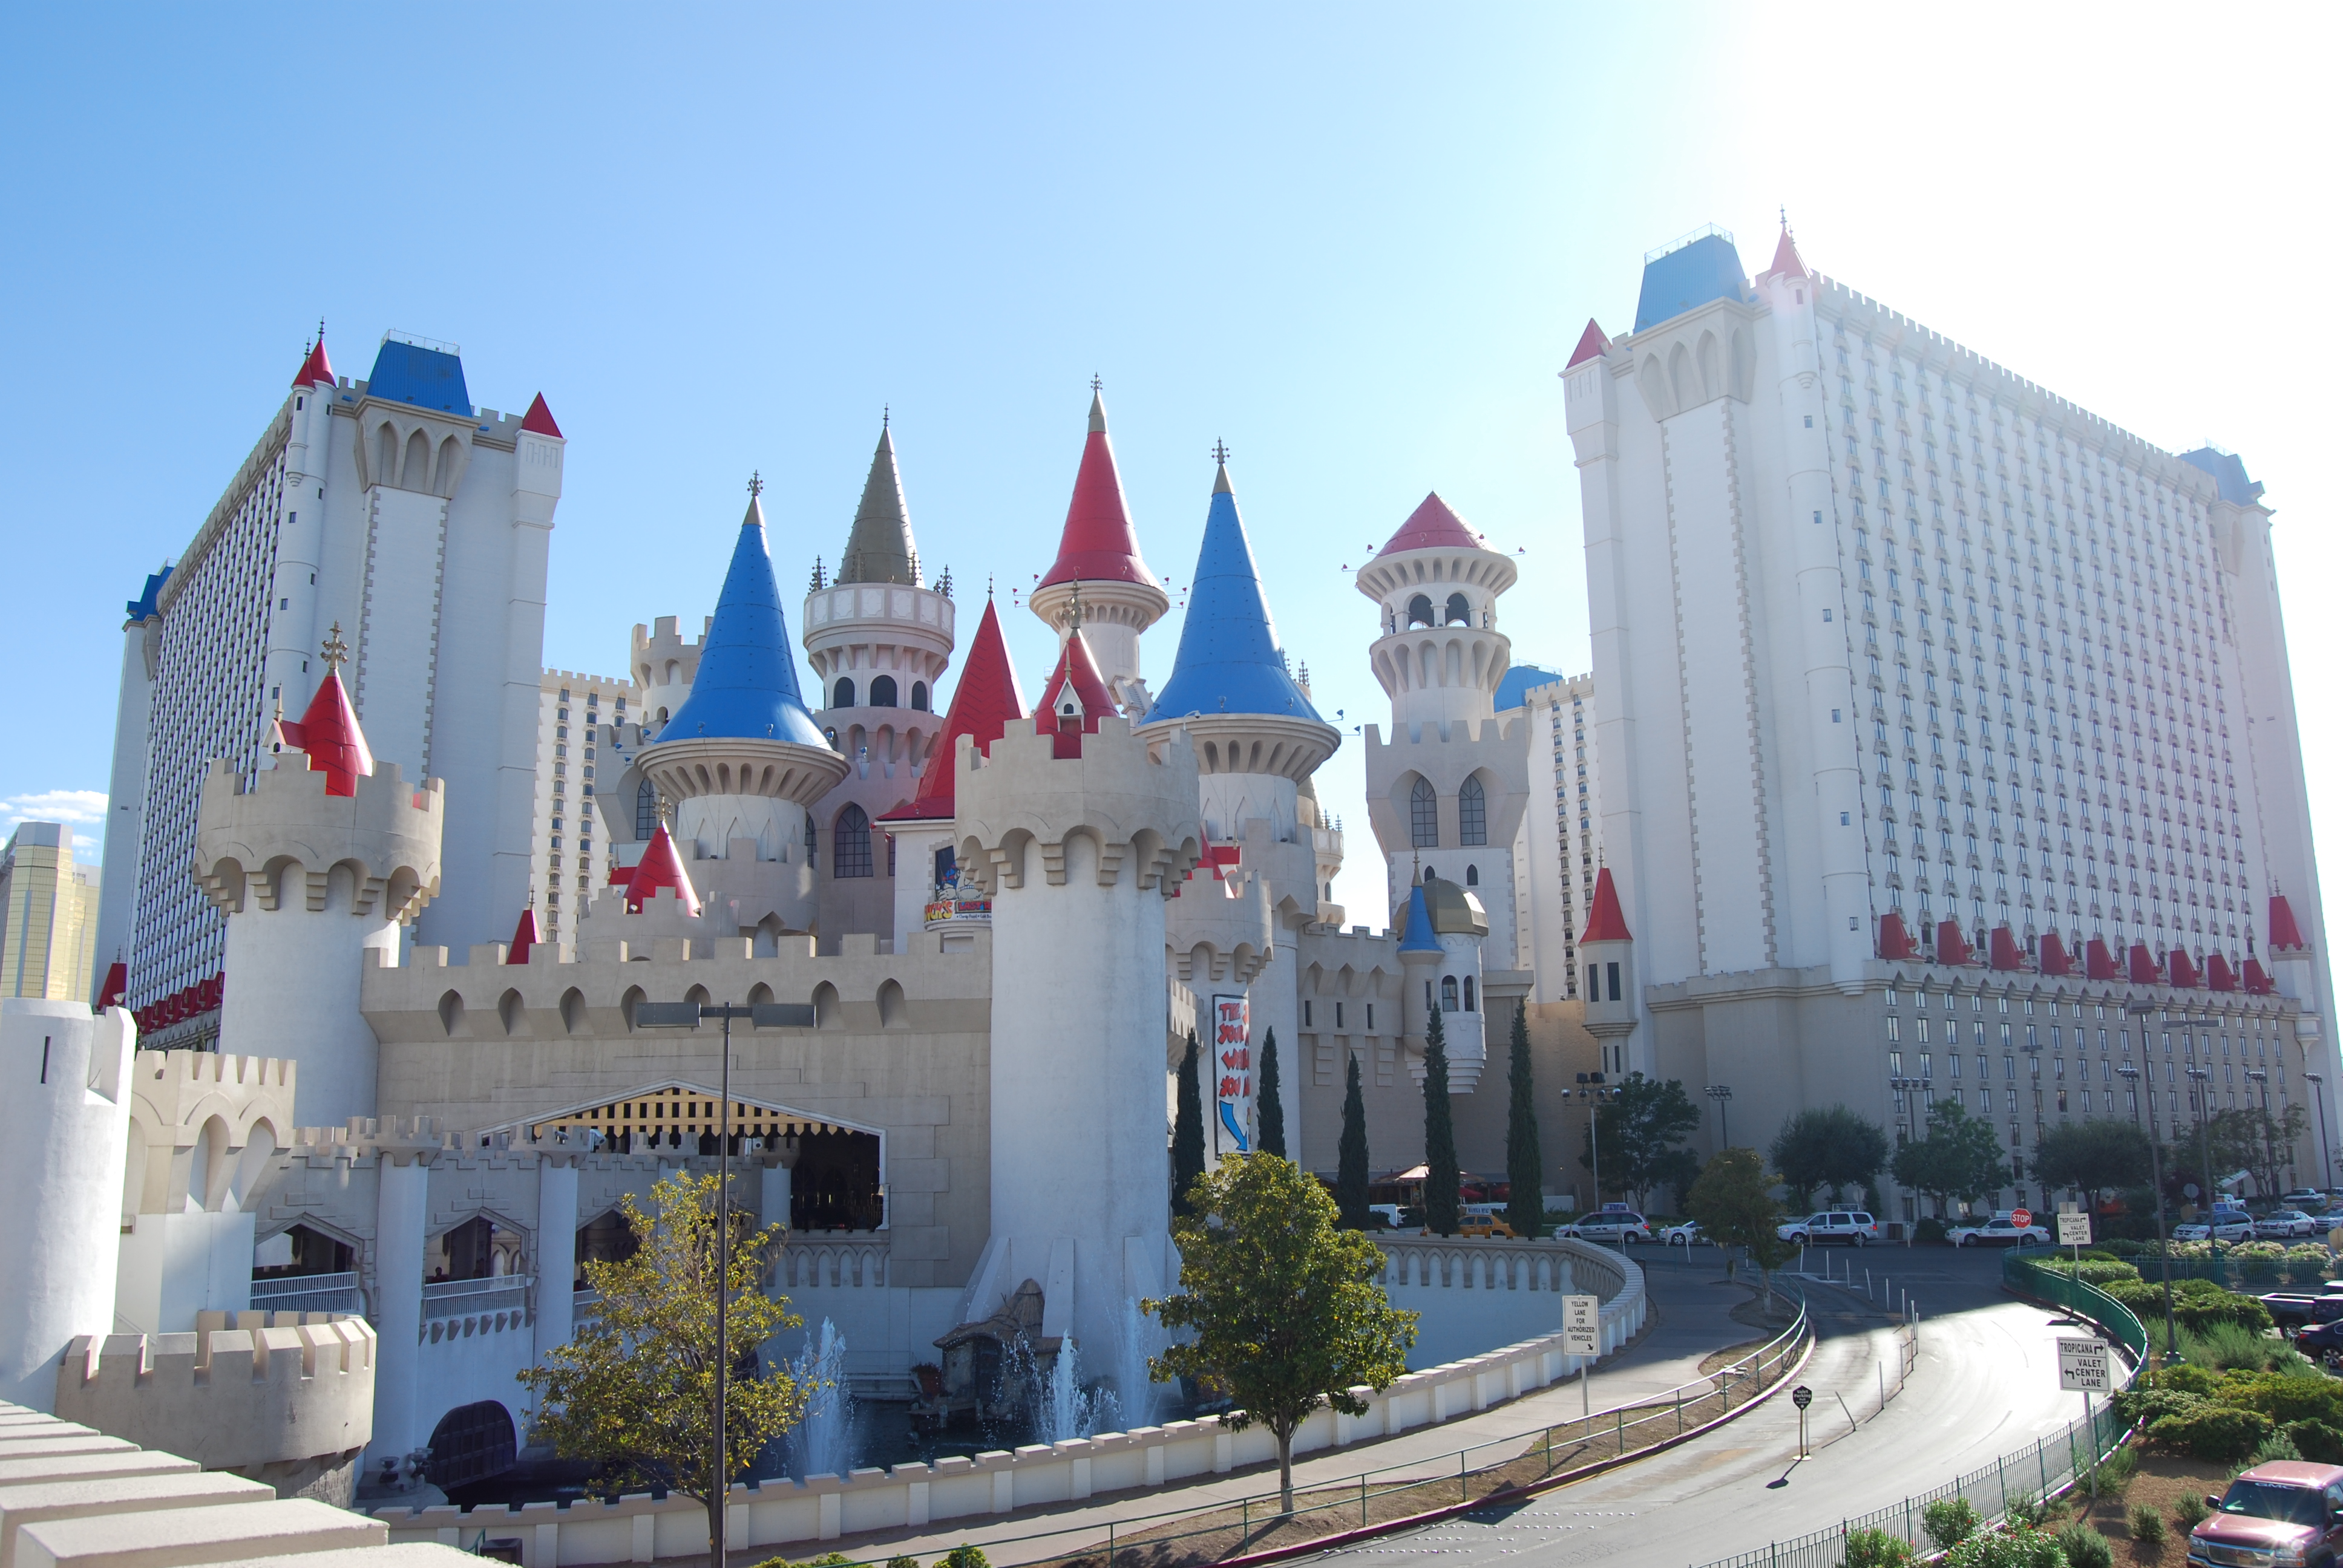 Resorts World Las Vegas - Wikipedia